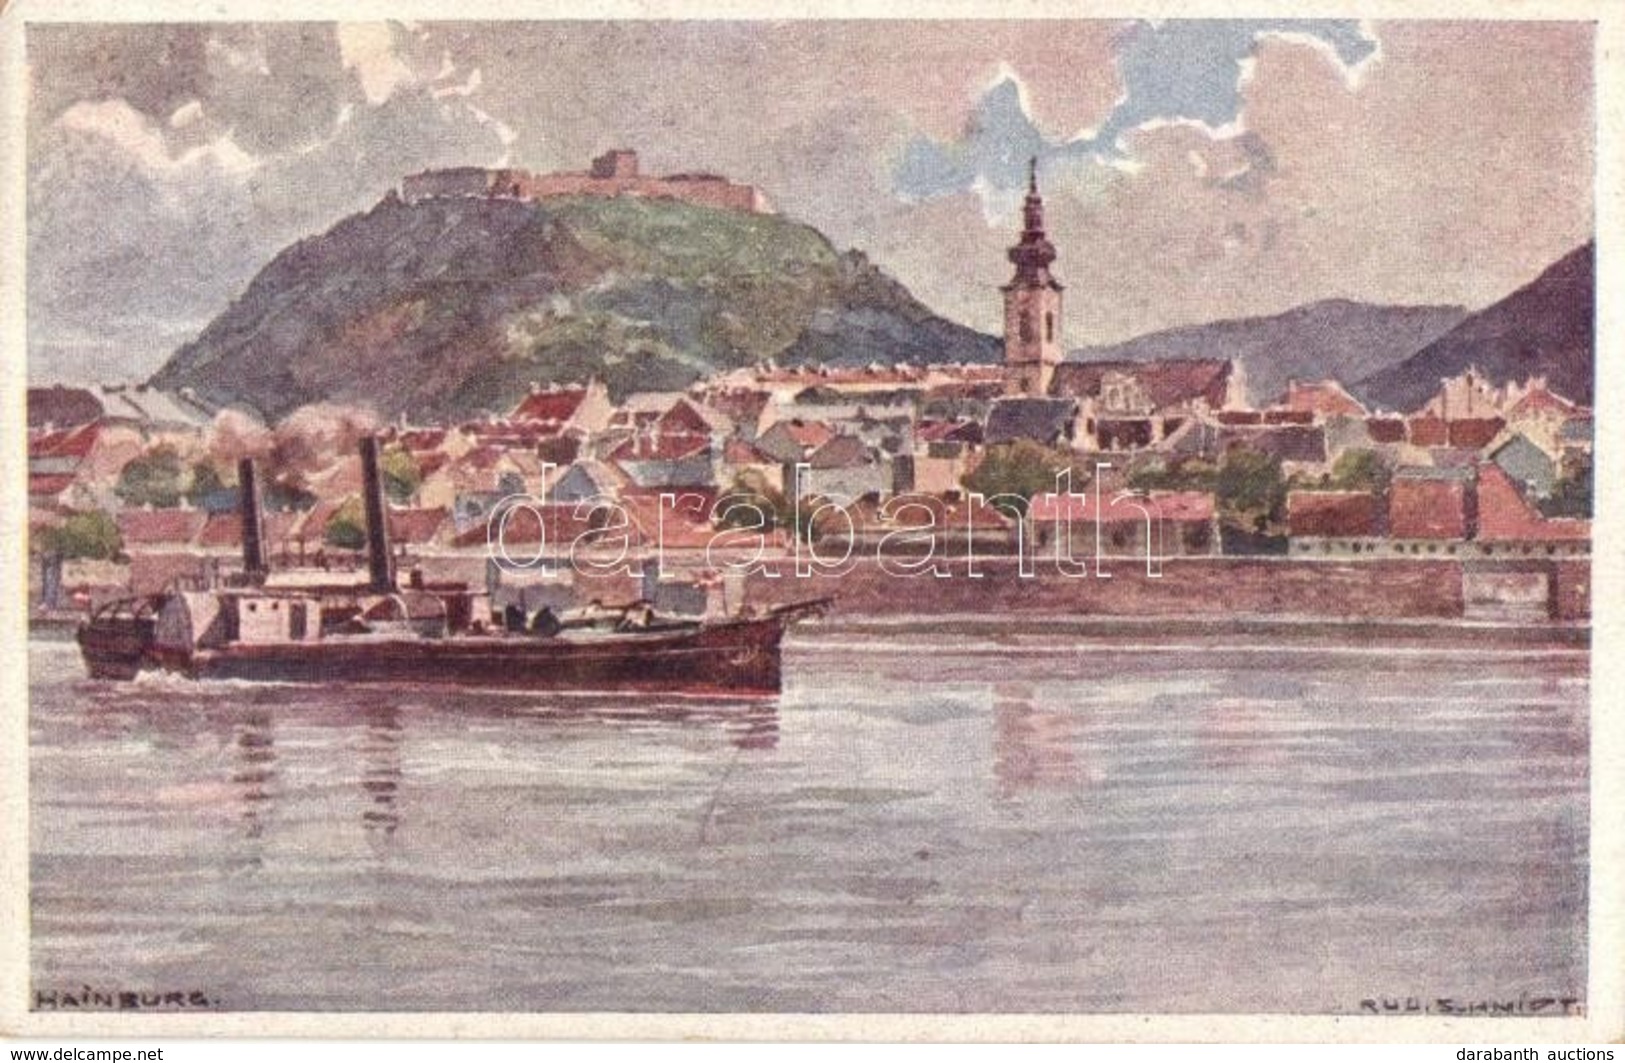 ** T1/T2 Hainburg An Der Donau, General View, Castle, Steamship, D.D.S.G. Postcard, S: Schmidt - Non Classés